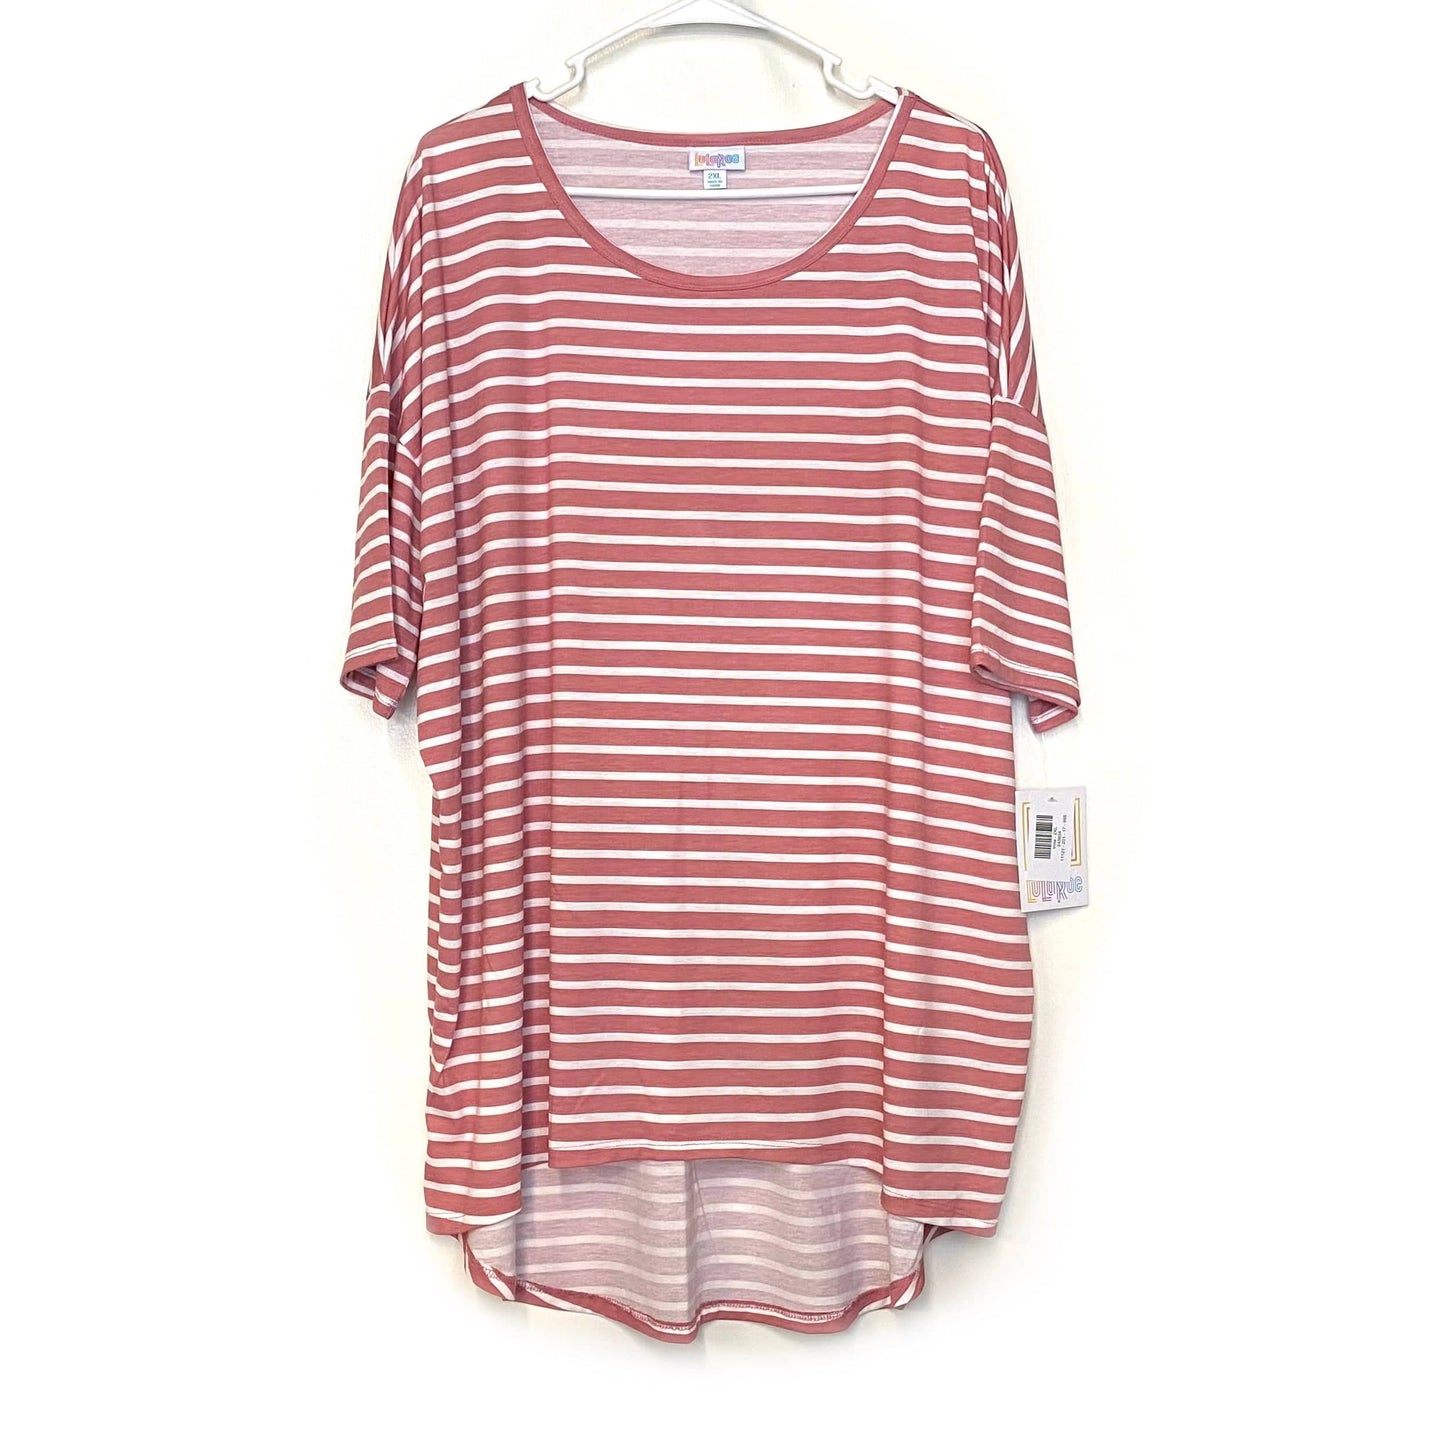 LuLaRoe Womens Size 2XL Watermelon Pink/White Irma Tunic Striped T-Shirt Shirt S/s NWT